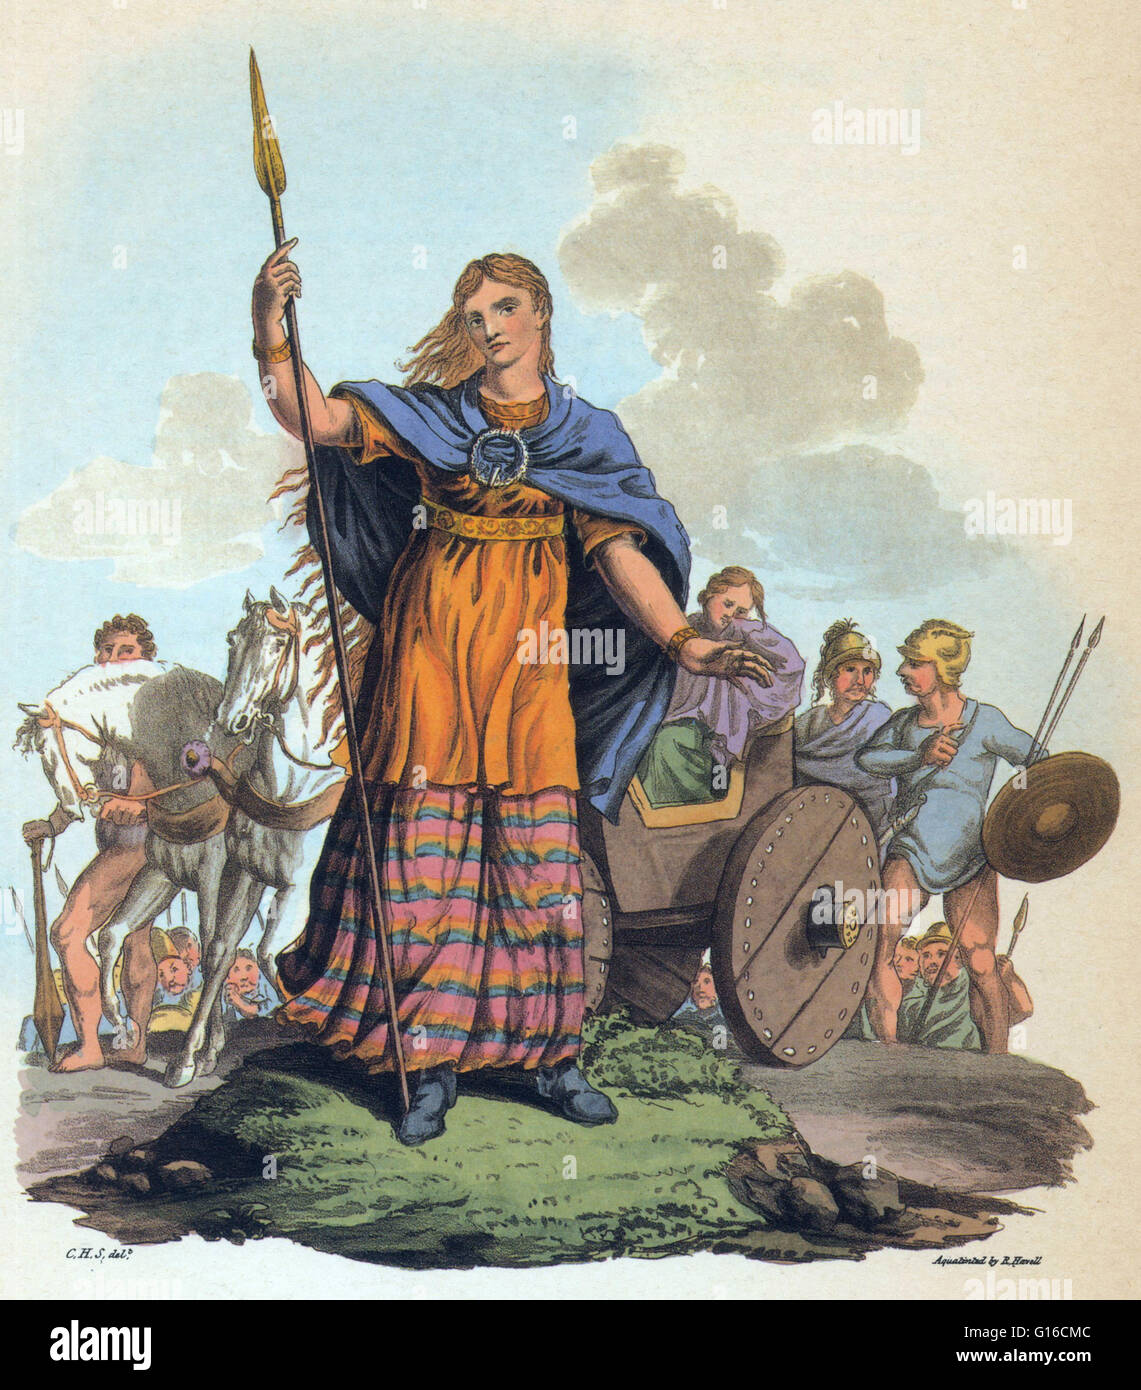 Boadicée (mort en 60 ou 61 MA) est la reine de la tribu des Iceni britannique, une tribu celte qui a dirigé un soulèvement contre les forces d'occupation de l'Empire romain. Son mari, Prasutagus, avait quitté son royaume conjointement à ses filles, et l'empereur romain lorsqu'il est mort Banque D'Images